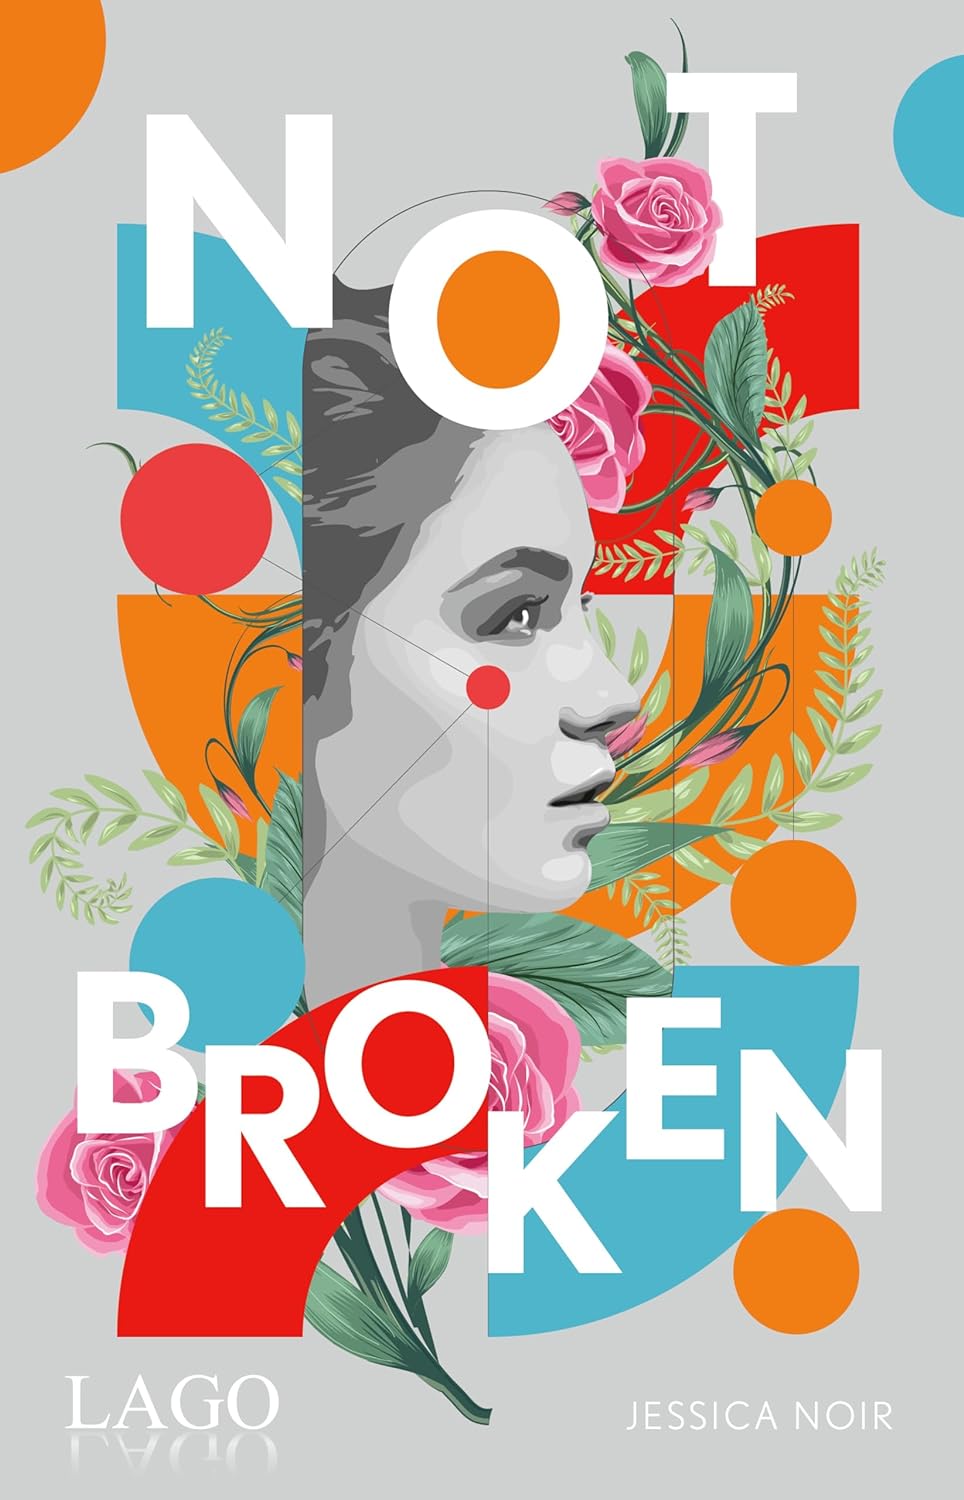 Jessica Noir - Not broken